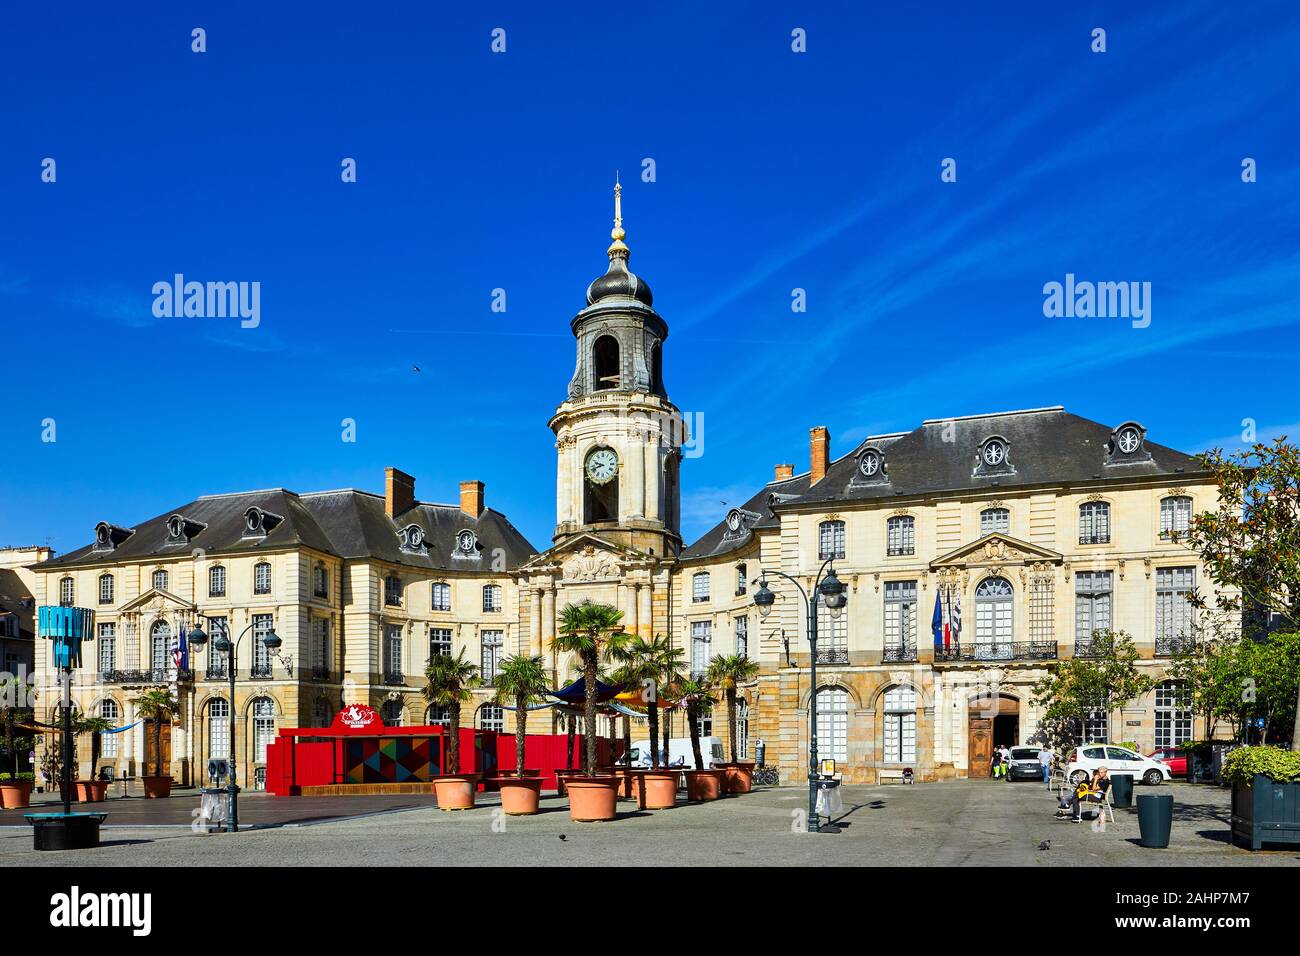 Image de la façade de la Mairie de Rennes à Rennes, Bretagne, France. Rennes est la capitale de la Bretagne et une destination touristique populaire Banque D'Images